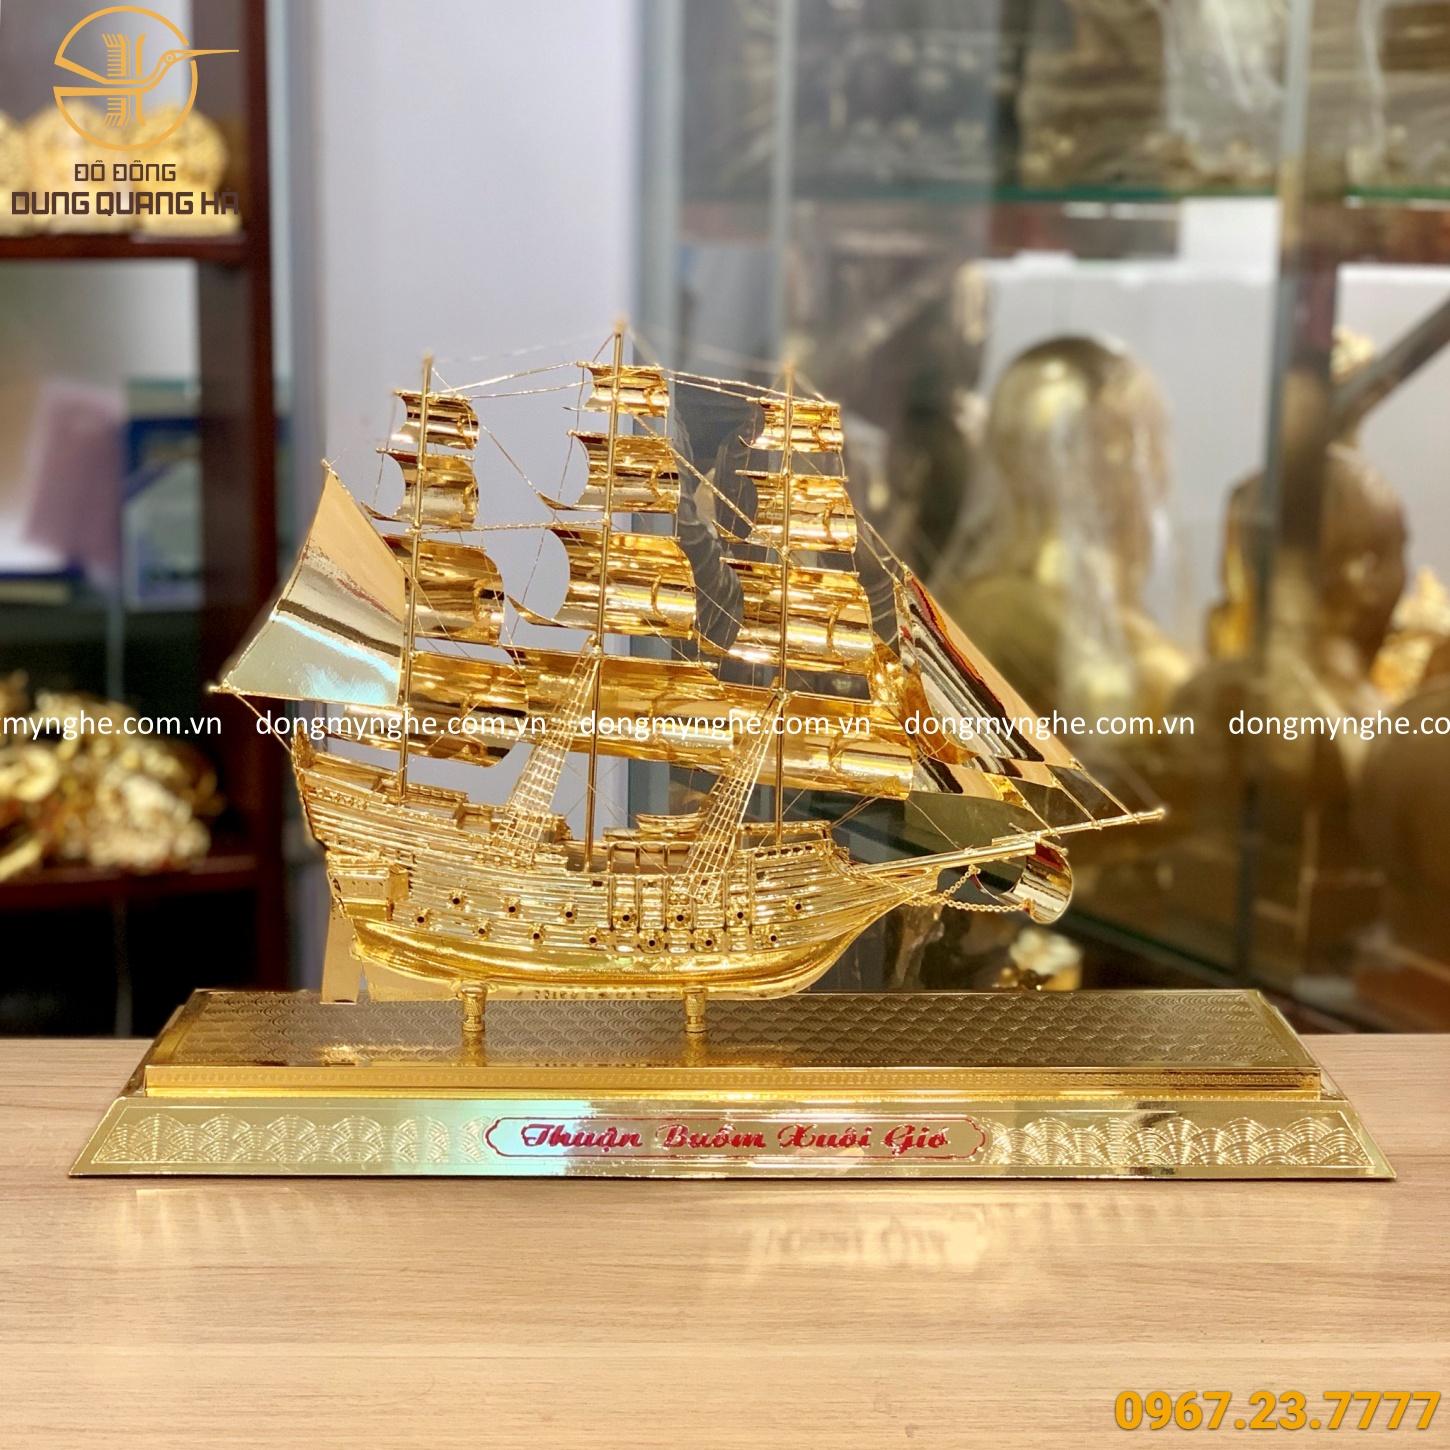 Thuyền buồm phong thủy mạ vàng tinh xảo - đế mạ vàng mẫu 1